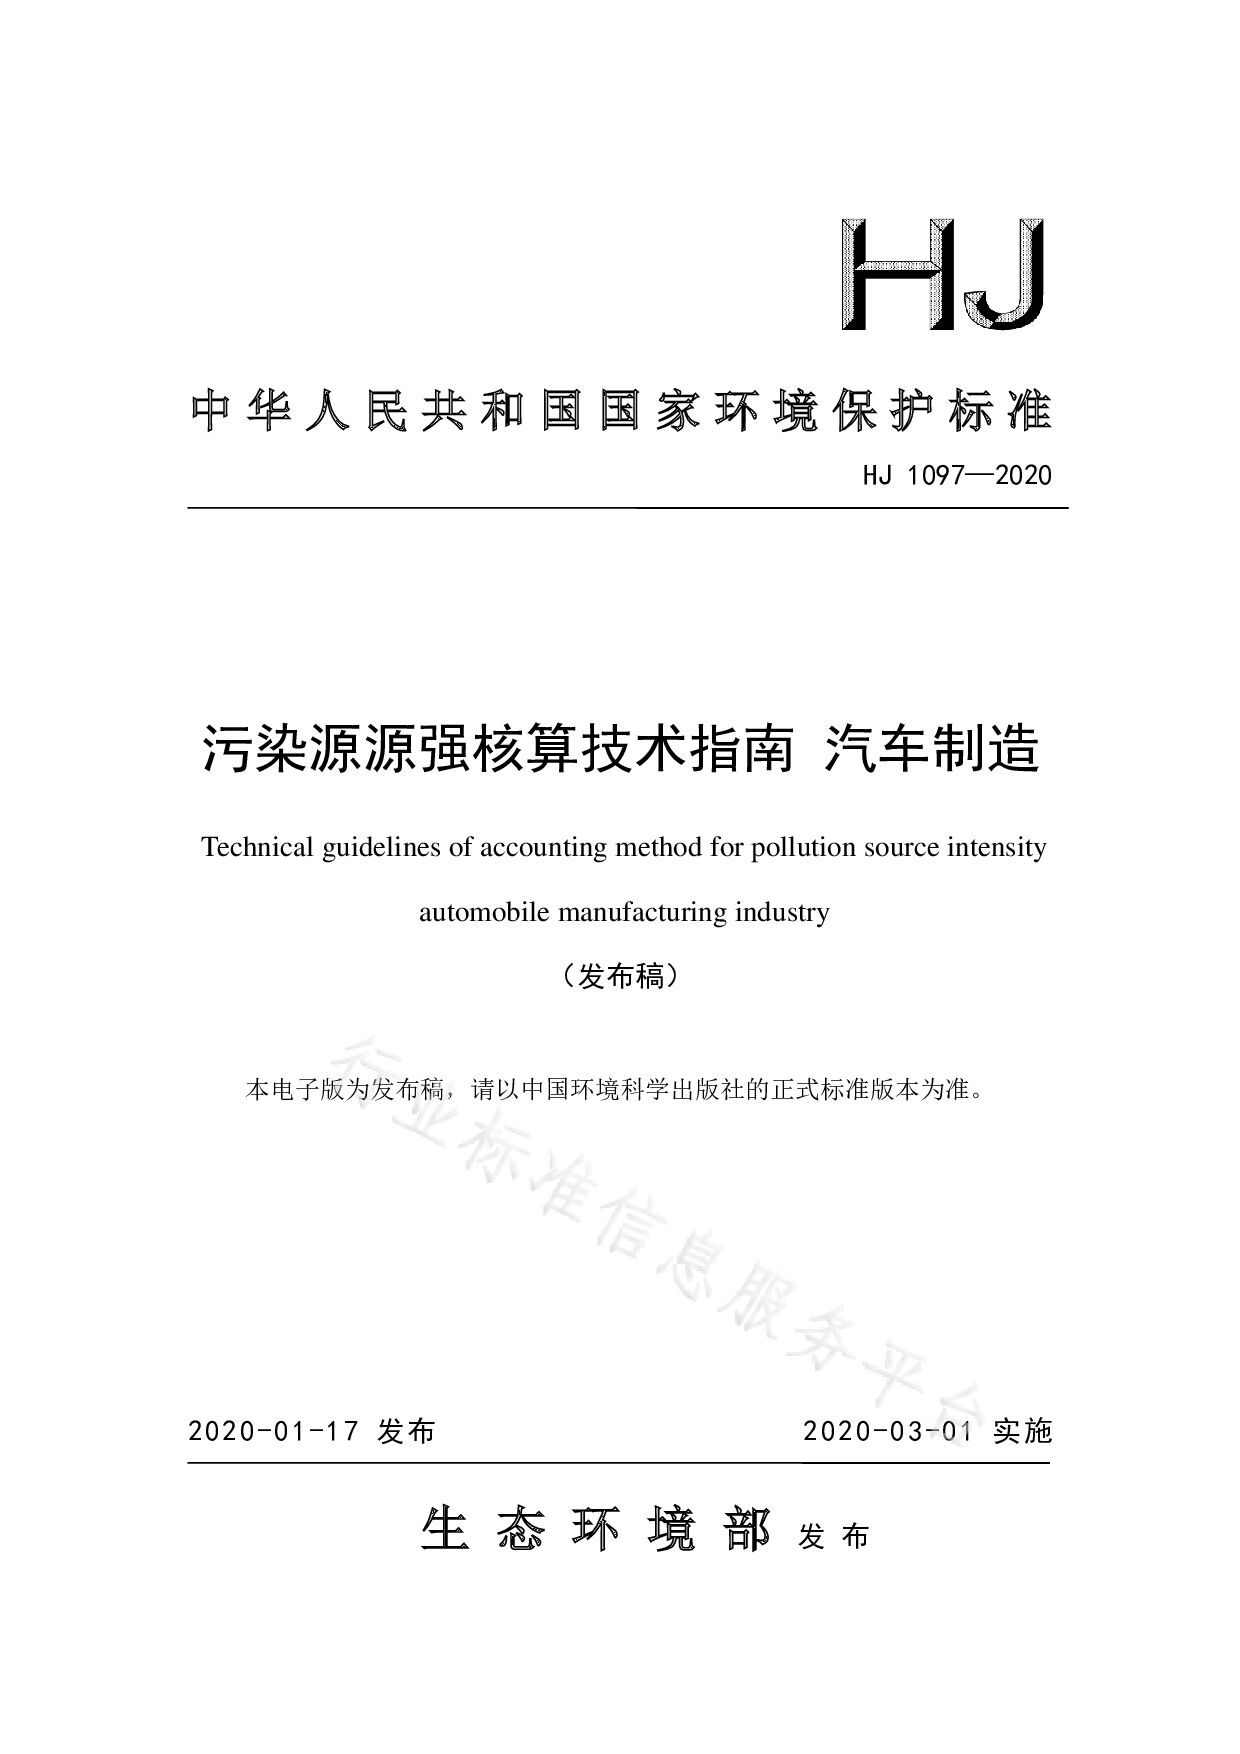 HJ 1097-2020封面图